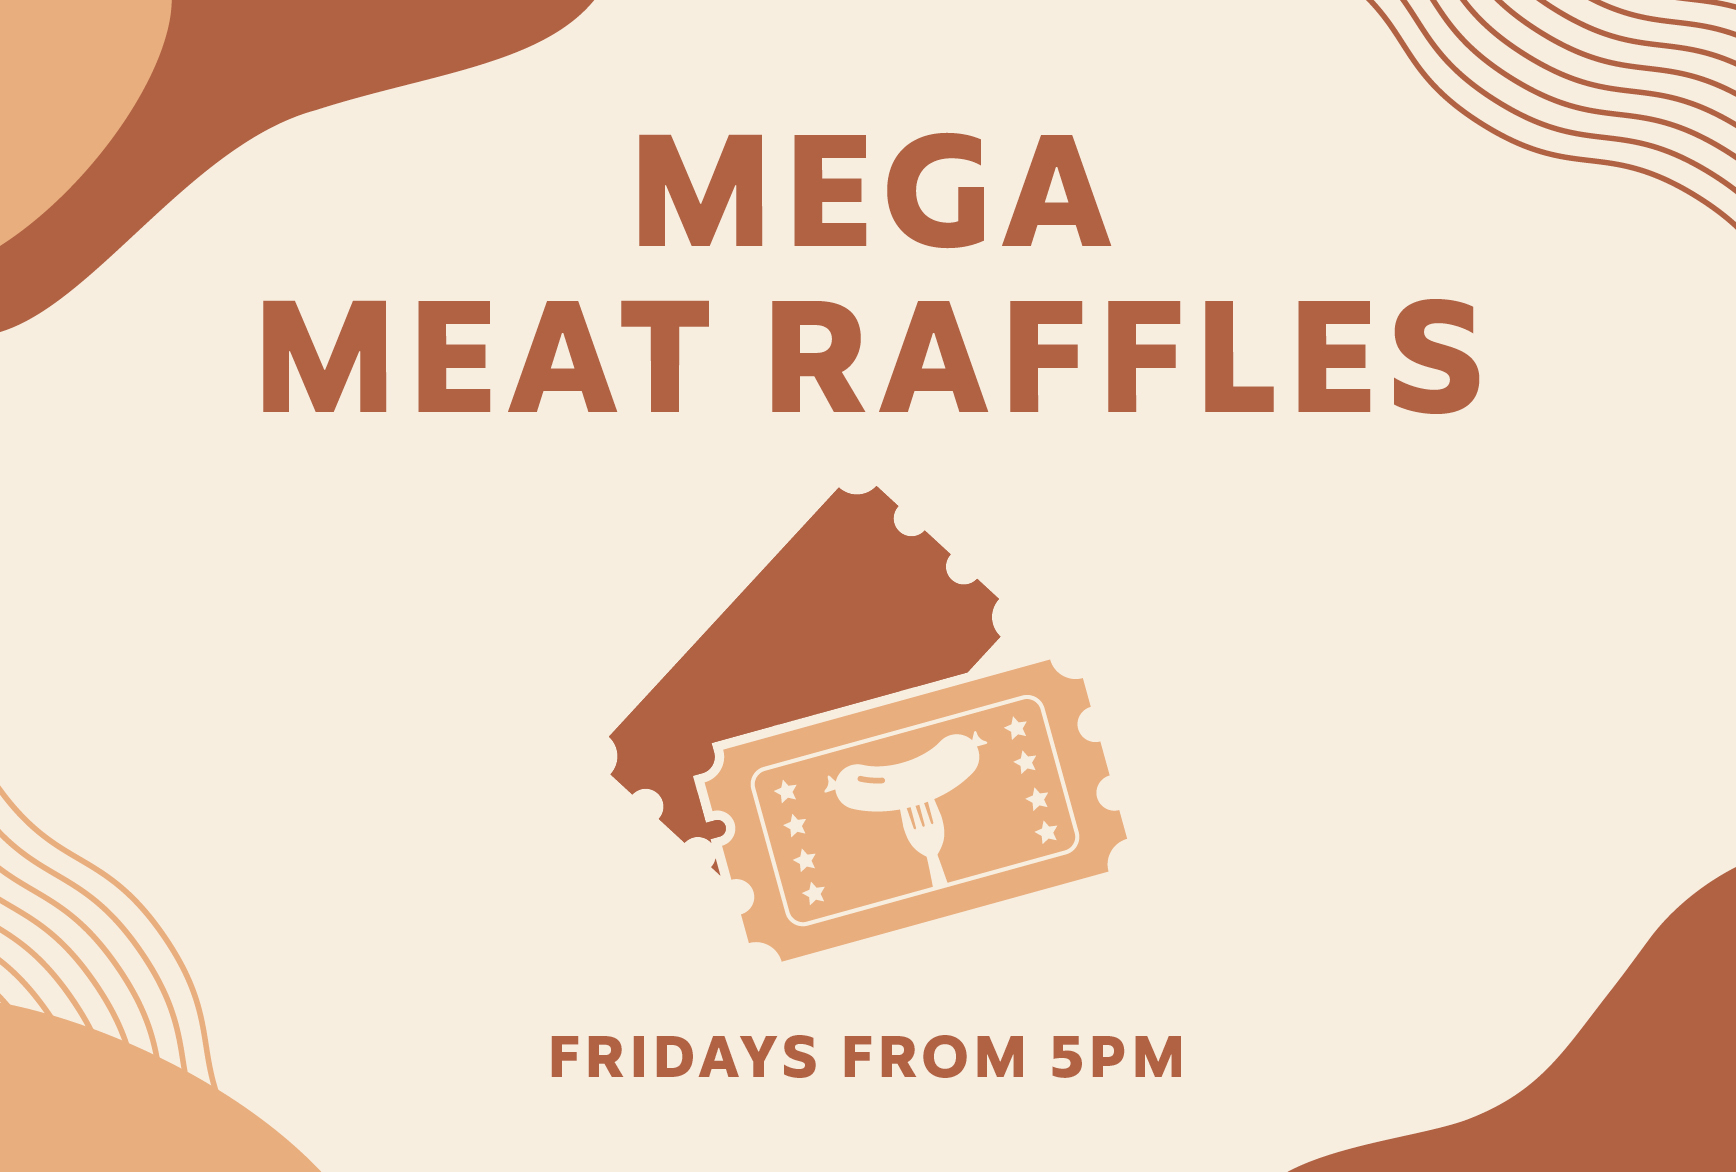 Friday: Mega Meat Raffles